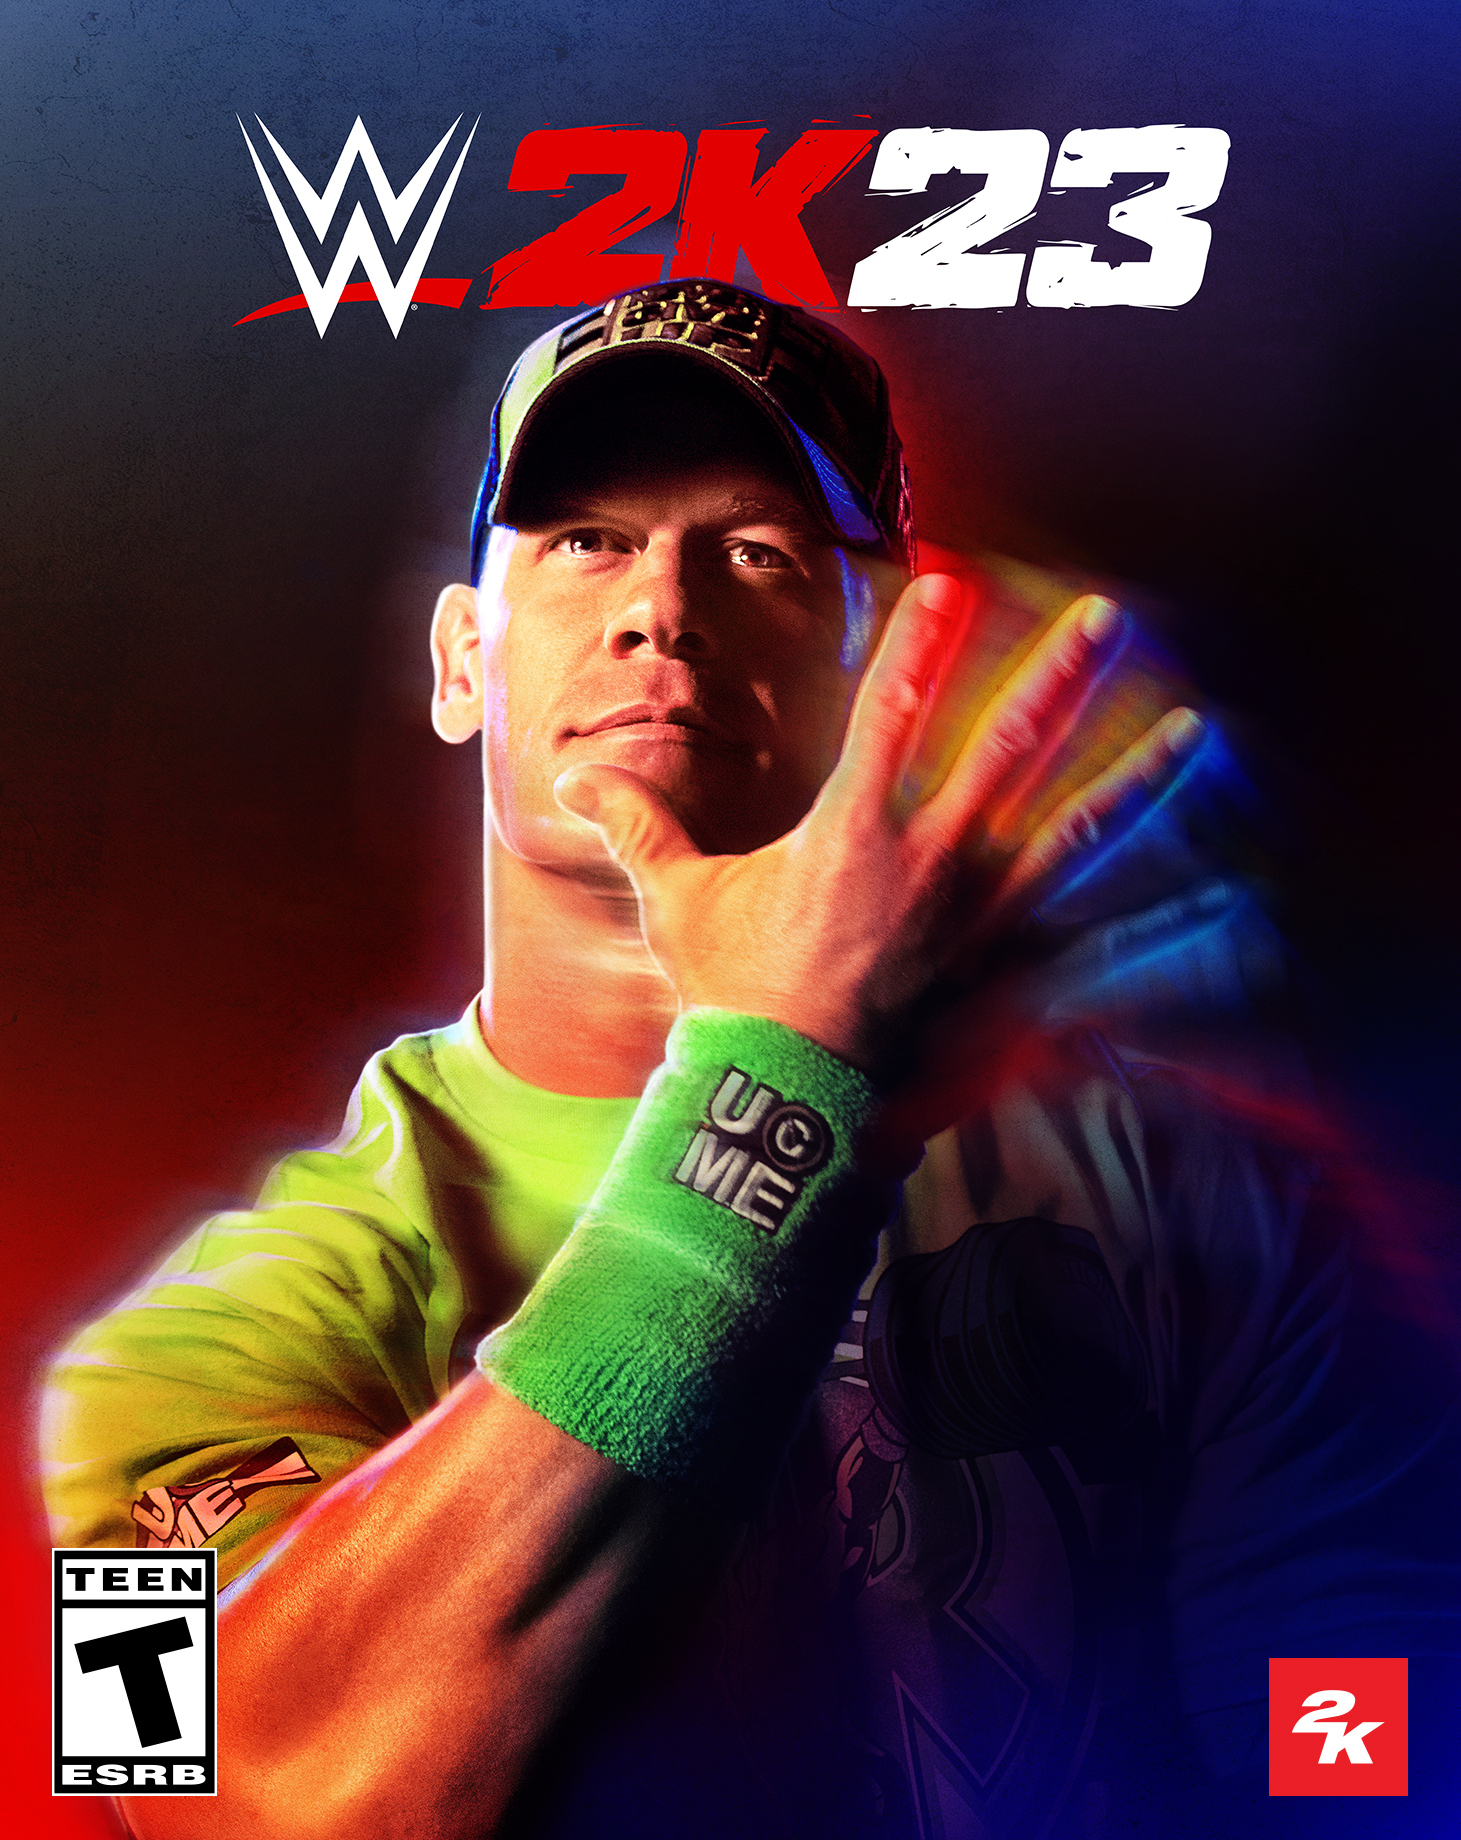 Portada de la edición estándar de WWE 2K23